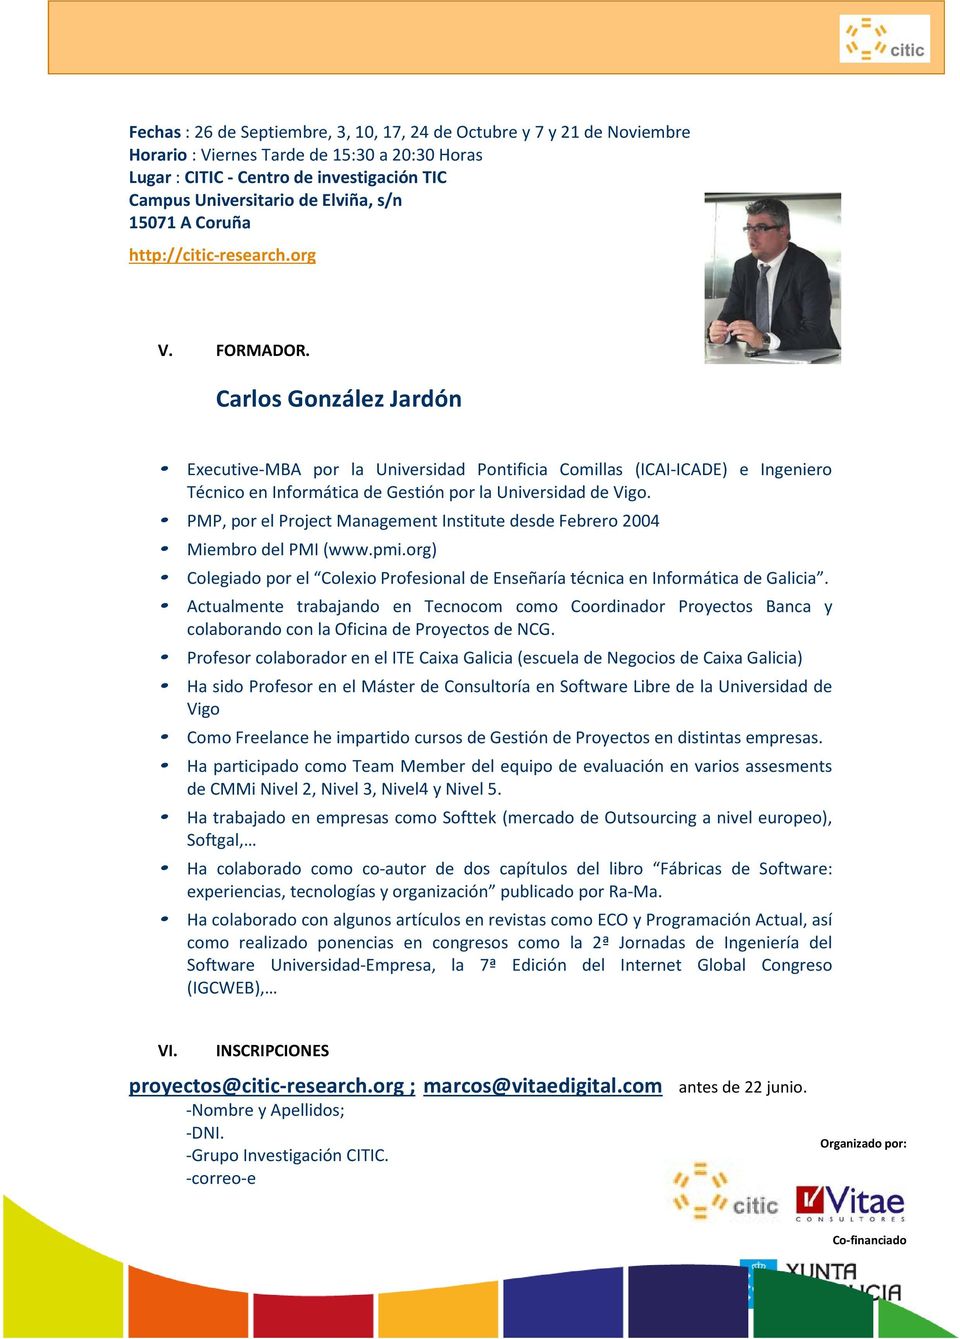 Carlos González Jardón Executive-MBA por la Universidad Pontificia Comillas (ICAI-ICADE) e Ingeniero Técnico en Informática de Gestión por la Universidad de Vigo.